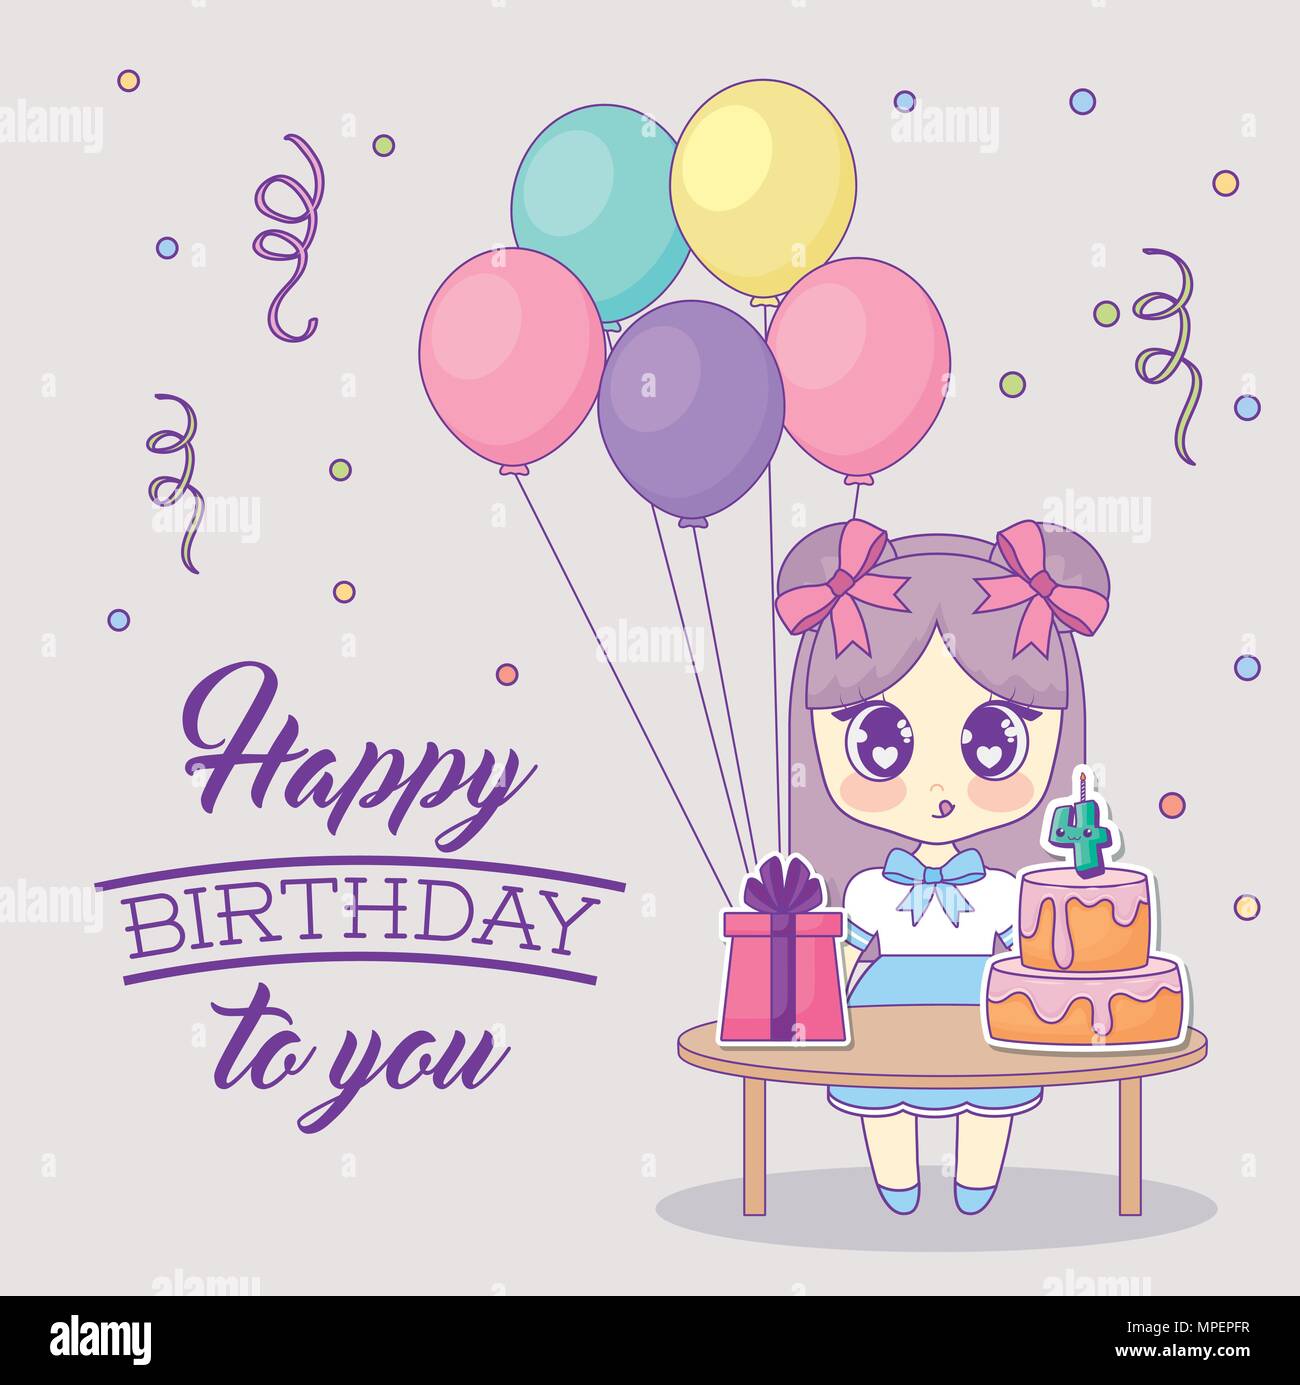 Thiết Kế Sinh Nhật Với Cô Gái Kawaii Anime Và Bàn Với Bánh Kem: Cùng tham gia khám phá bộ sưu tập ảnh với những thiết kế sinh nhật độc đáo và sáng tạo, với hình ảnh cô gái Kawaii Anime xinh đẹp và bàn tiệc đầy món tráng miệng ngon lành. Hãy để món sinh nhật của bạn trở thành một kỷ niệm đáng nhớ.